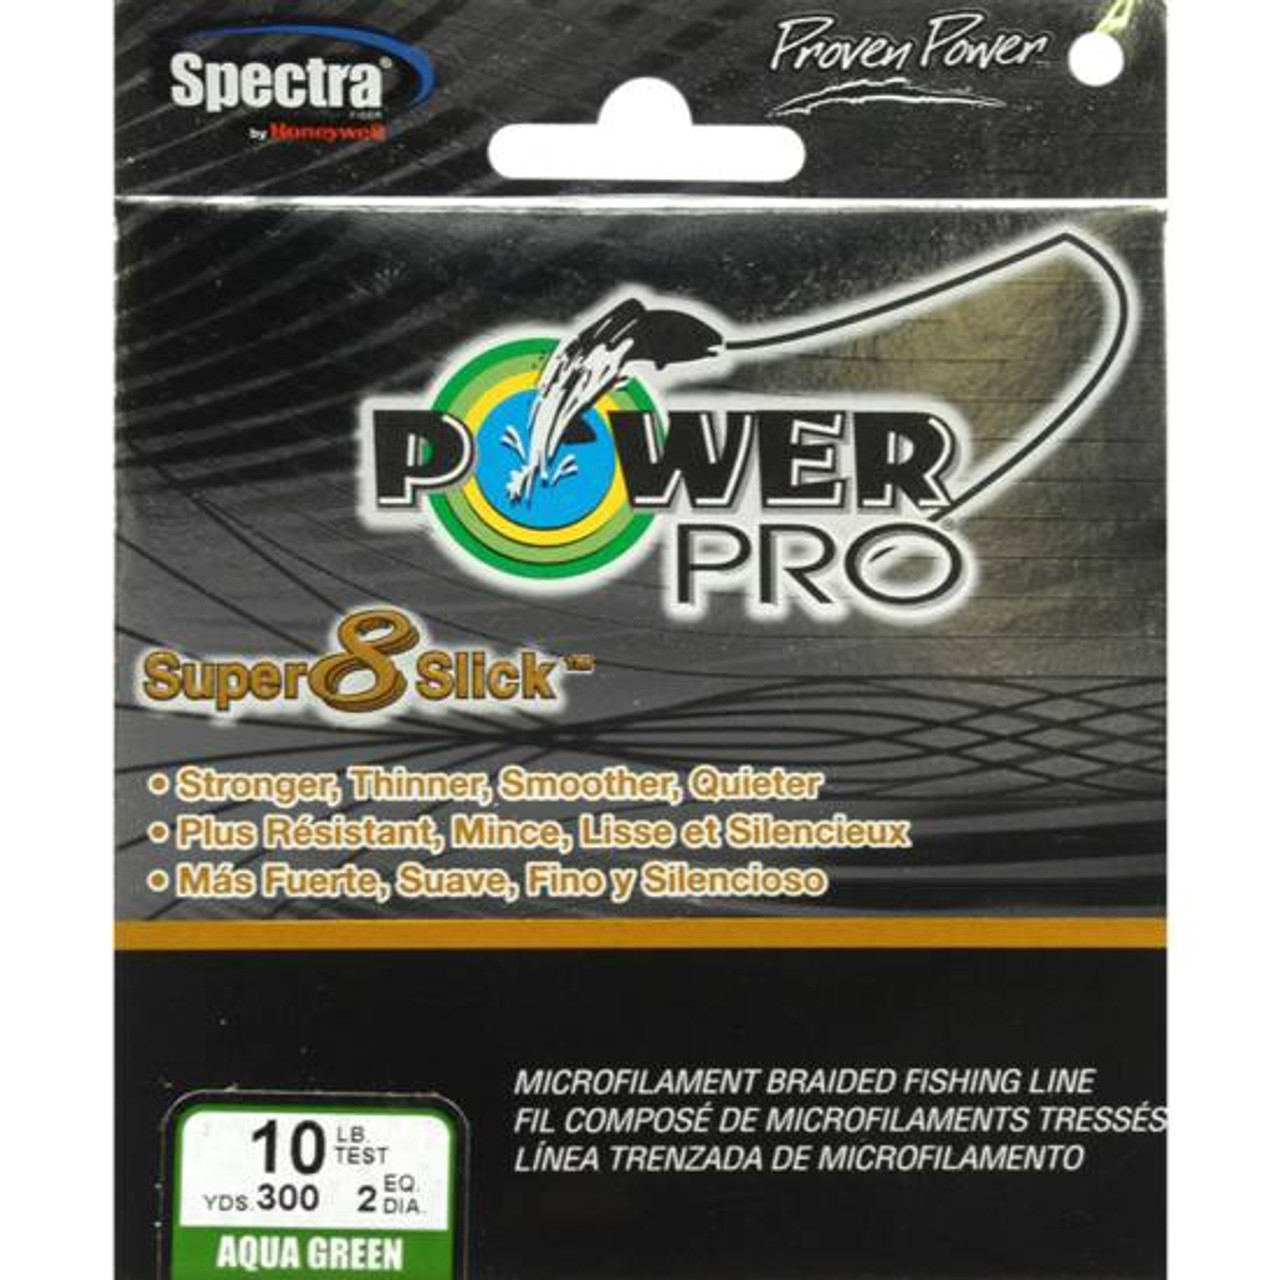 PowerPro Super 8 Slick Aqua Green 300 yds. - 10 lb. Test [FC